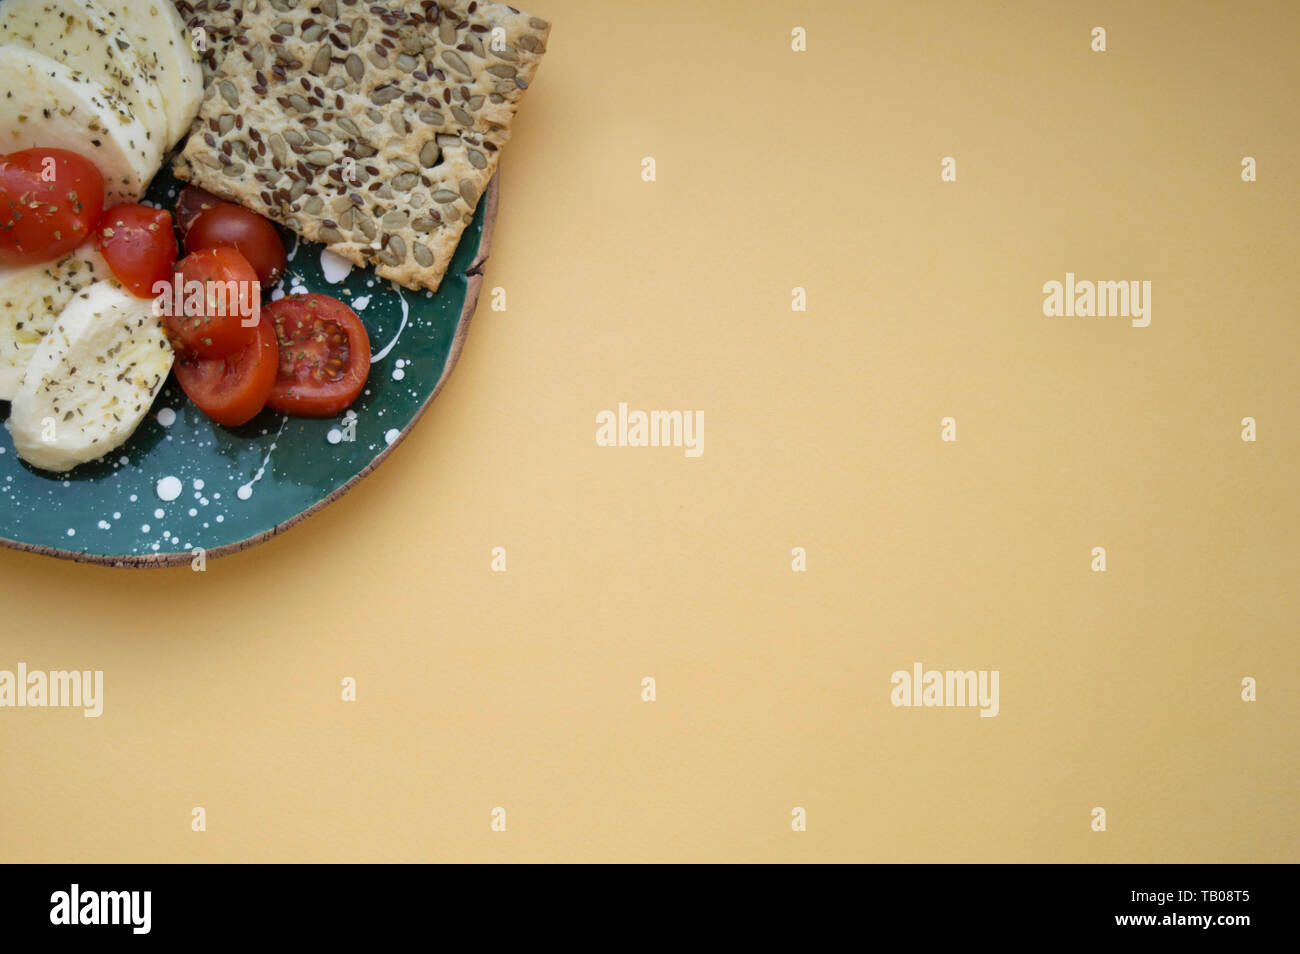 La mozzarella, tomates cerises et de basilic frais et des biscuits aux céréales sur la plaque en céramique fait main verte dans le coin supérieur gauche. Jaune lumière backg Banque D'Images